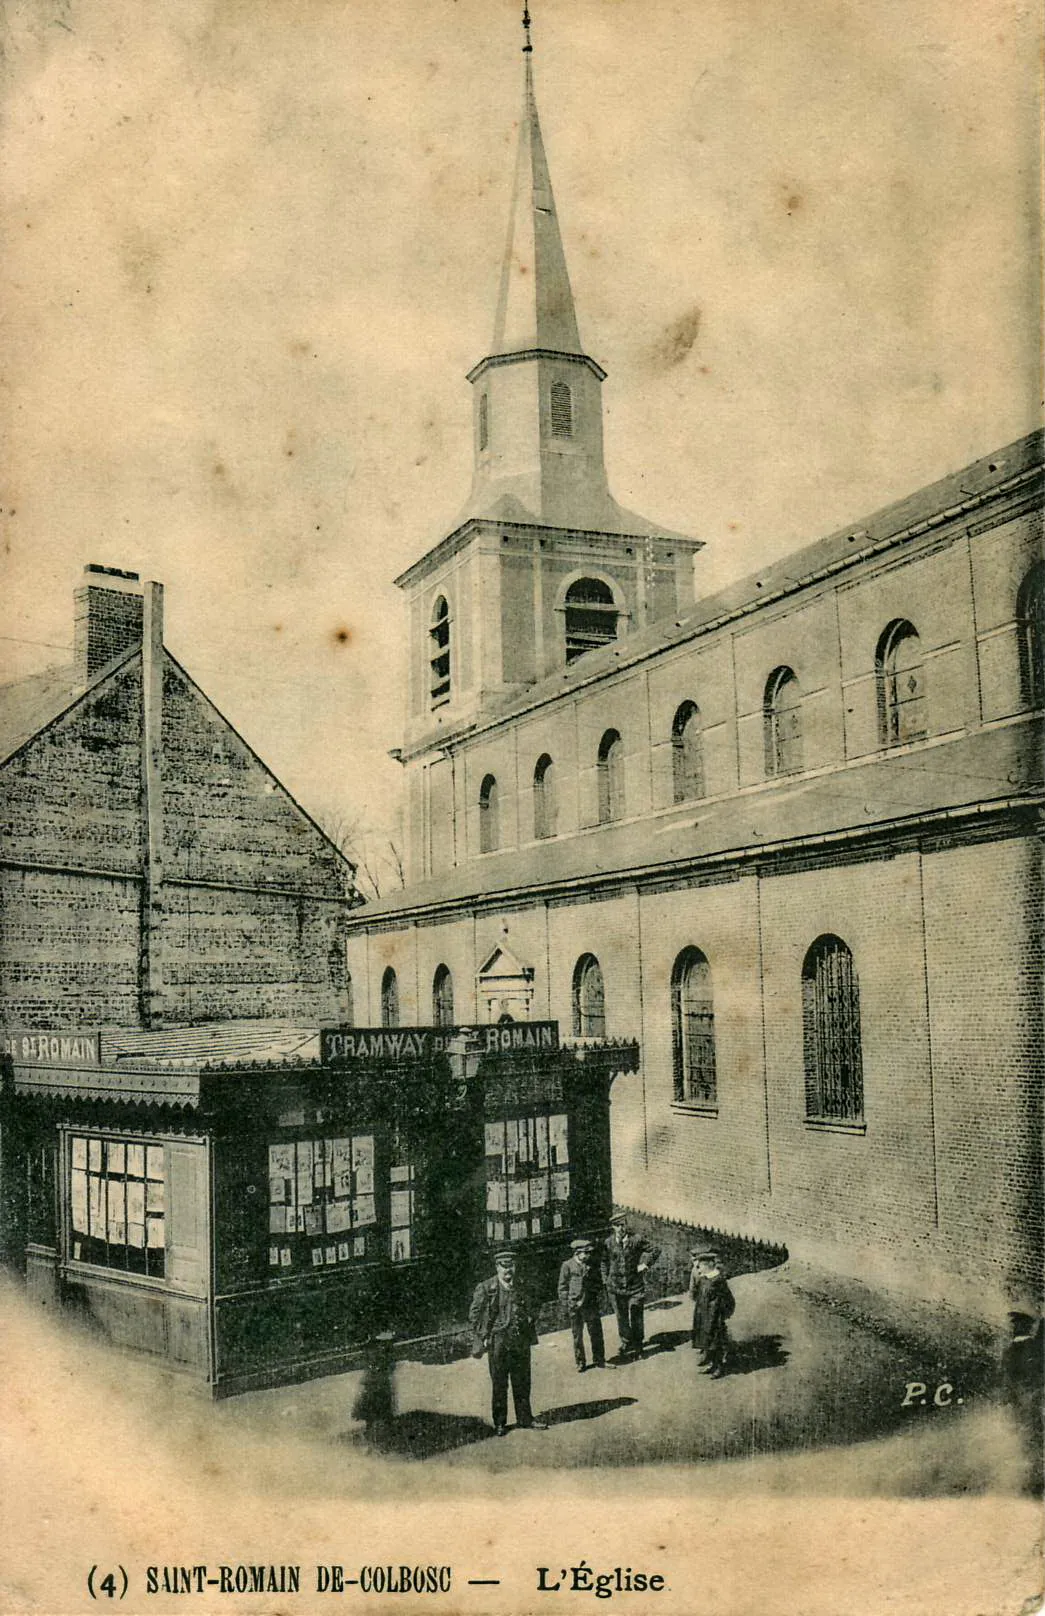 Photo showing: Carte postale ancienne éditée par P. C. n°4 SAINT-ROMAIN-DE-COLBOSC - L'église Vue en gros plan du kiosque de la station terminale du Tramway de Saint-Romain-de-Colbosc